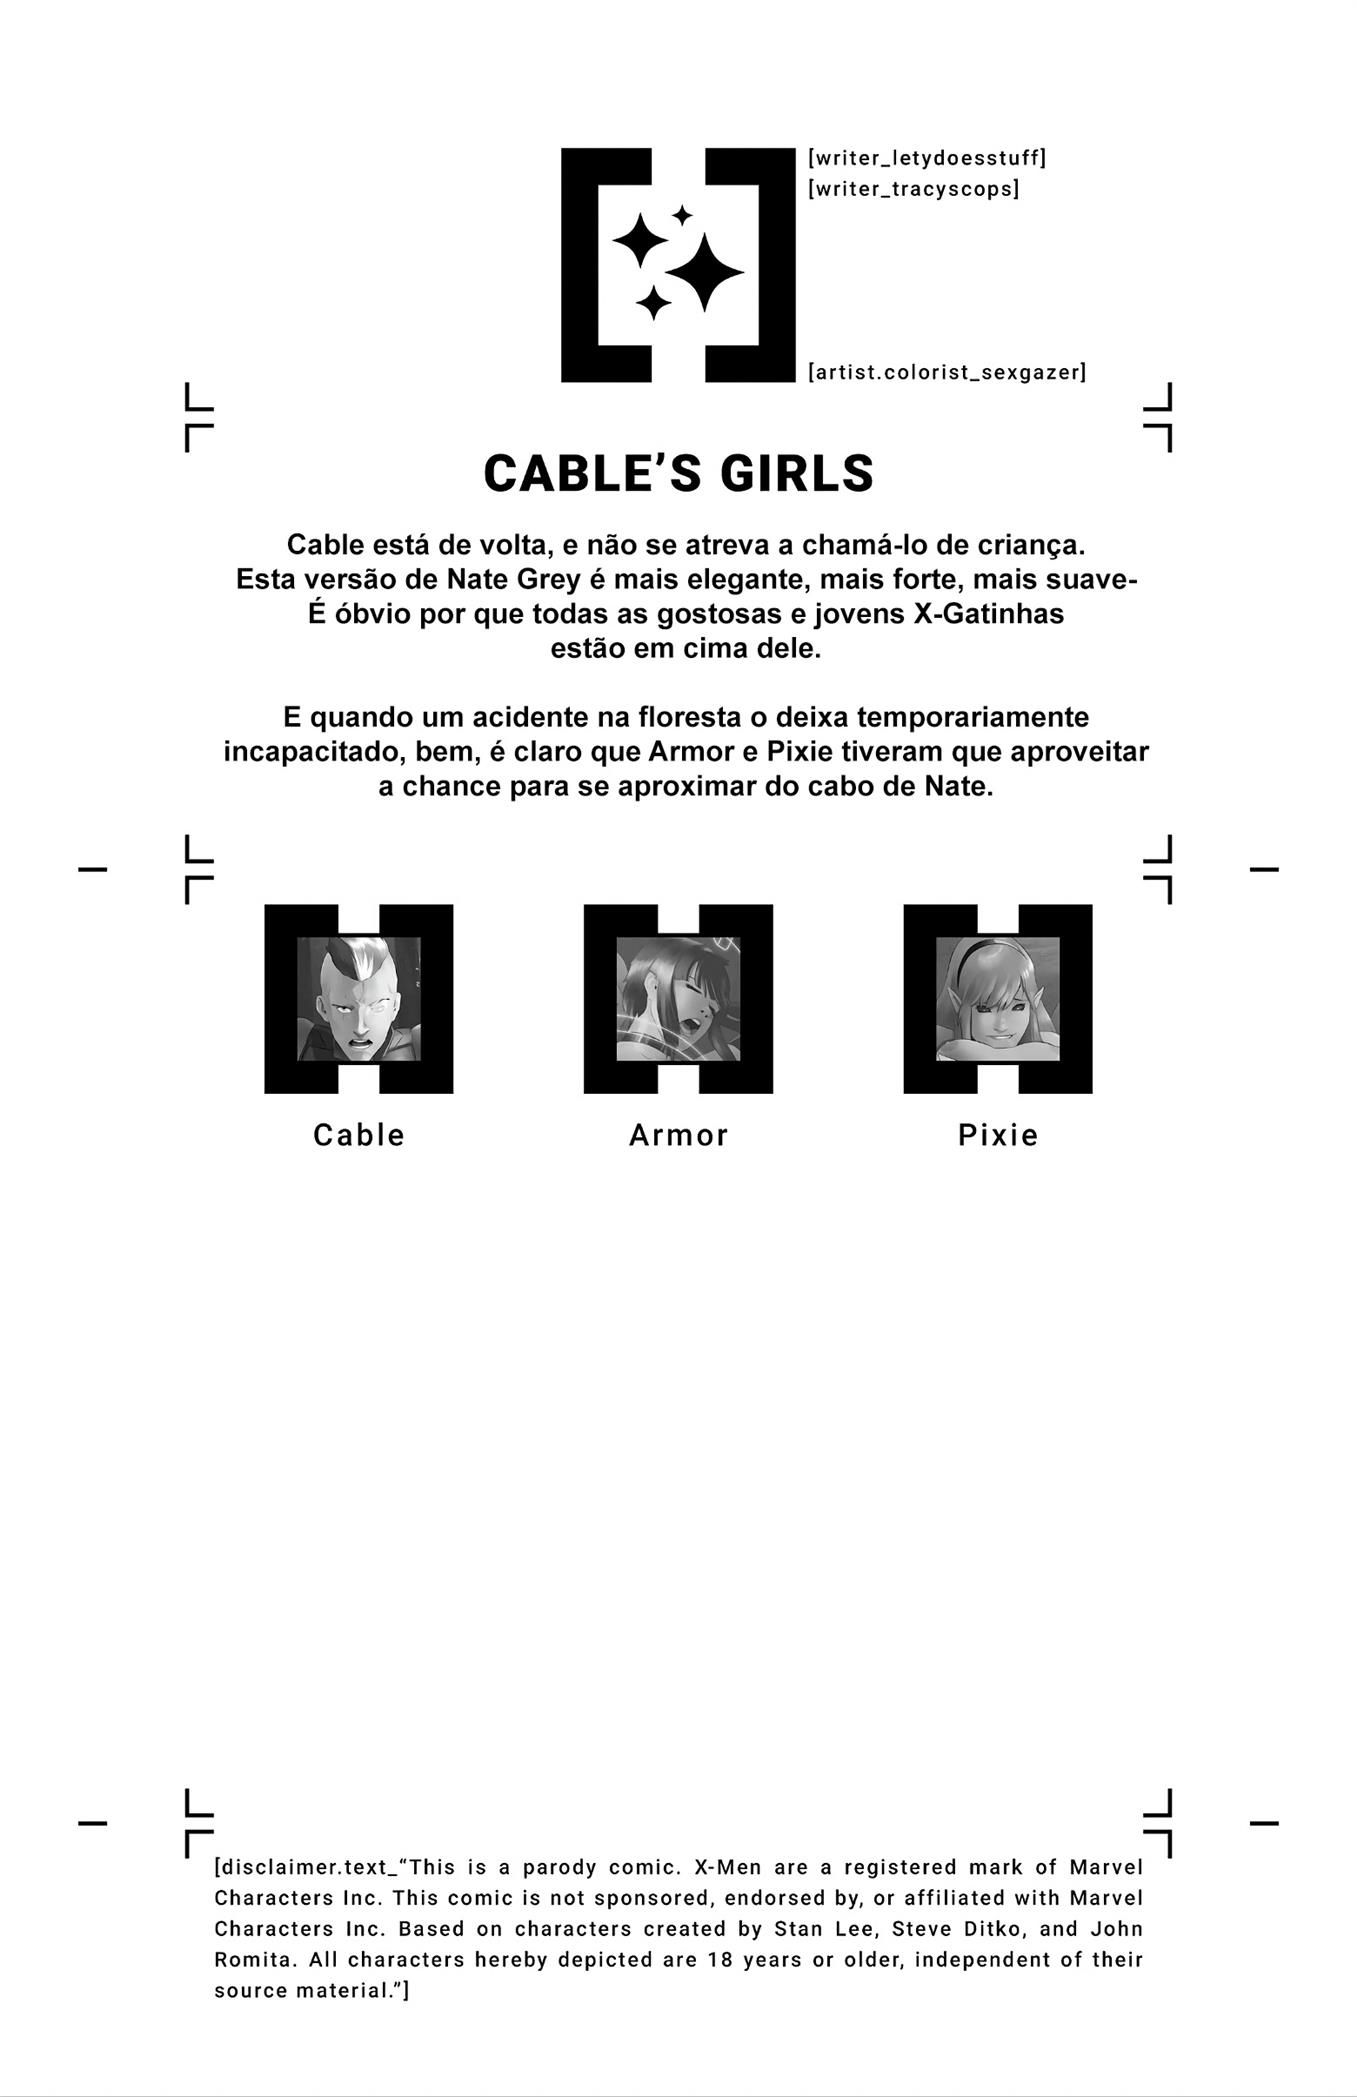 Casa do XXX – As garotas de Cable